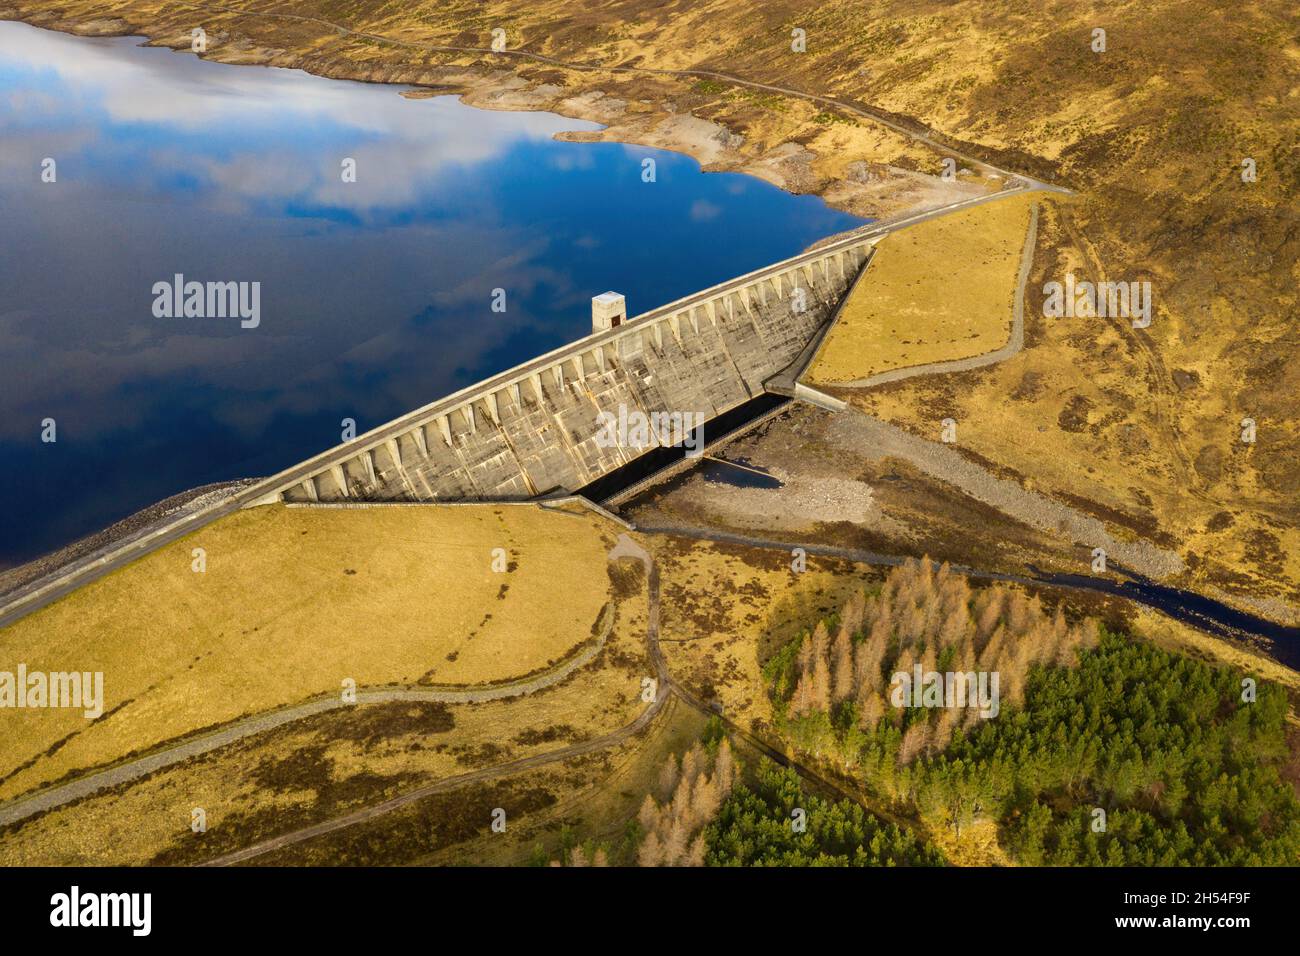 Represa hidroeléctrica Glascarnoch, cerca de Garve, en las Tierras Altas de Escocia. Foto de stock